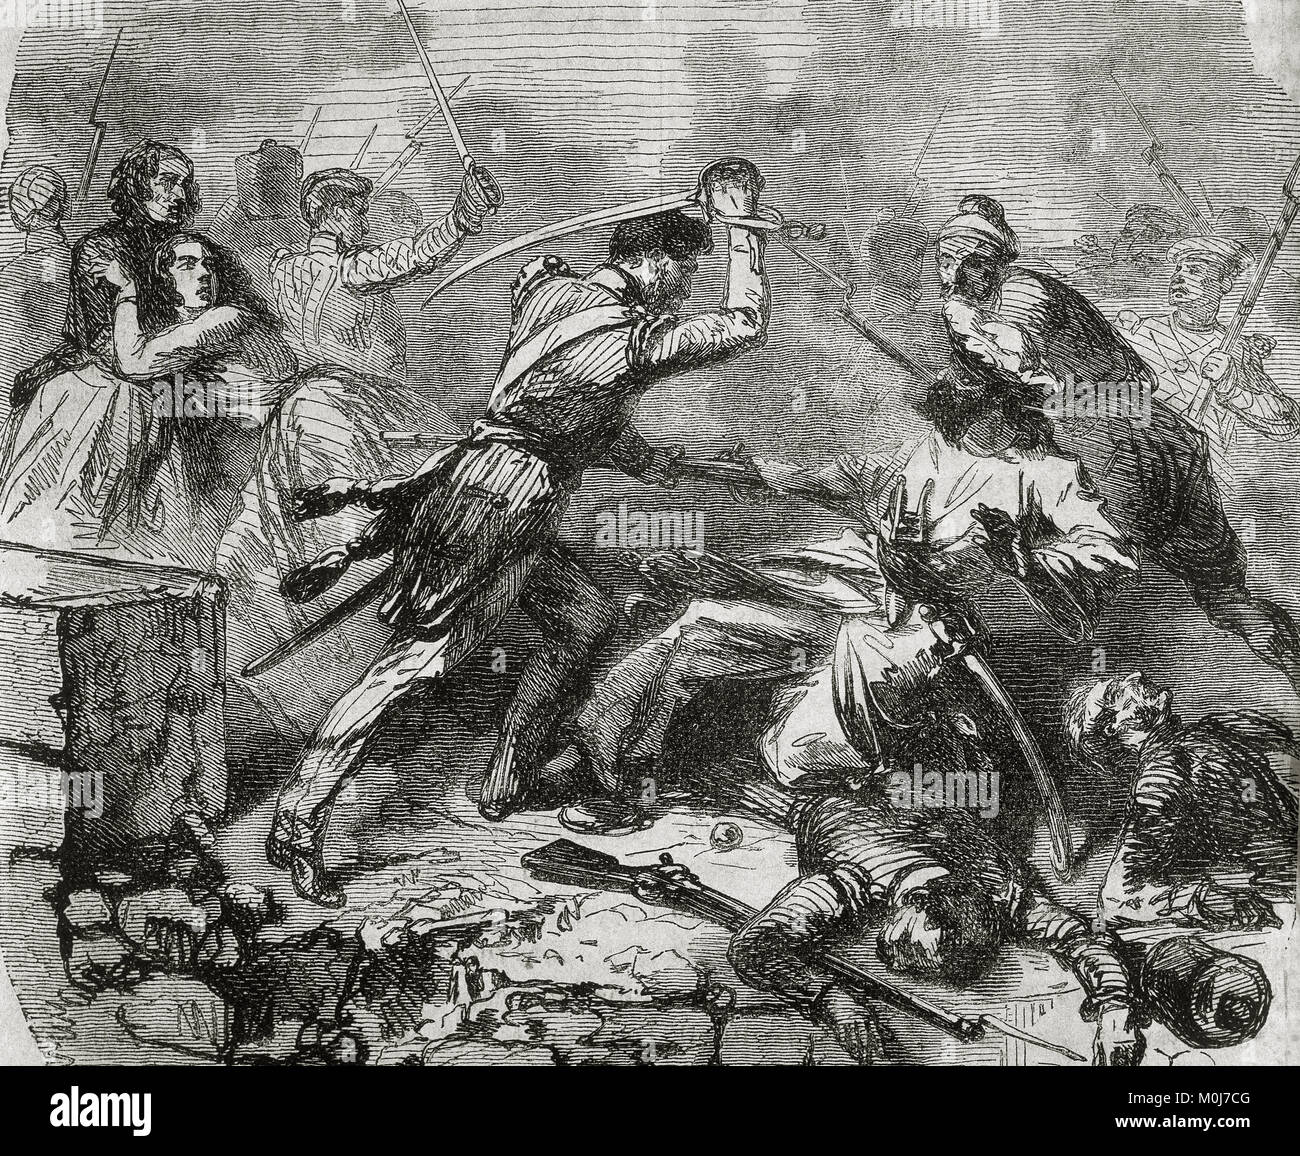 Indische Meuterei oder Sepoy Meuterei (1857-1858). Rebelion gegen die britische Herrschaft in Indien. Es wurde von indischen Truppen in den Dienst der Britischen begonnen. Stockfoto